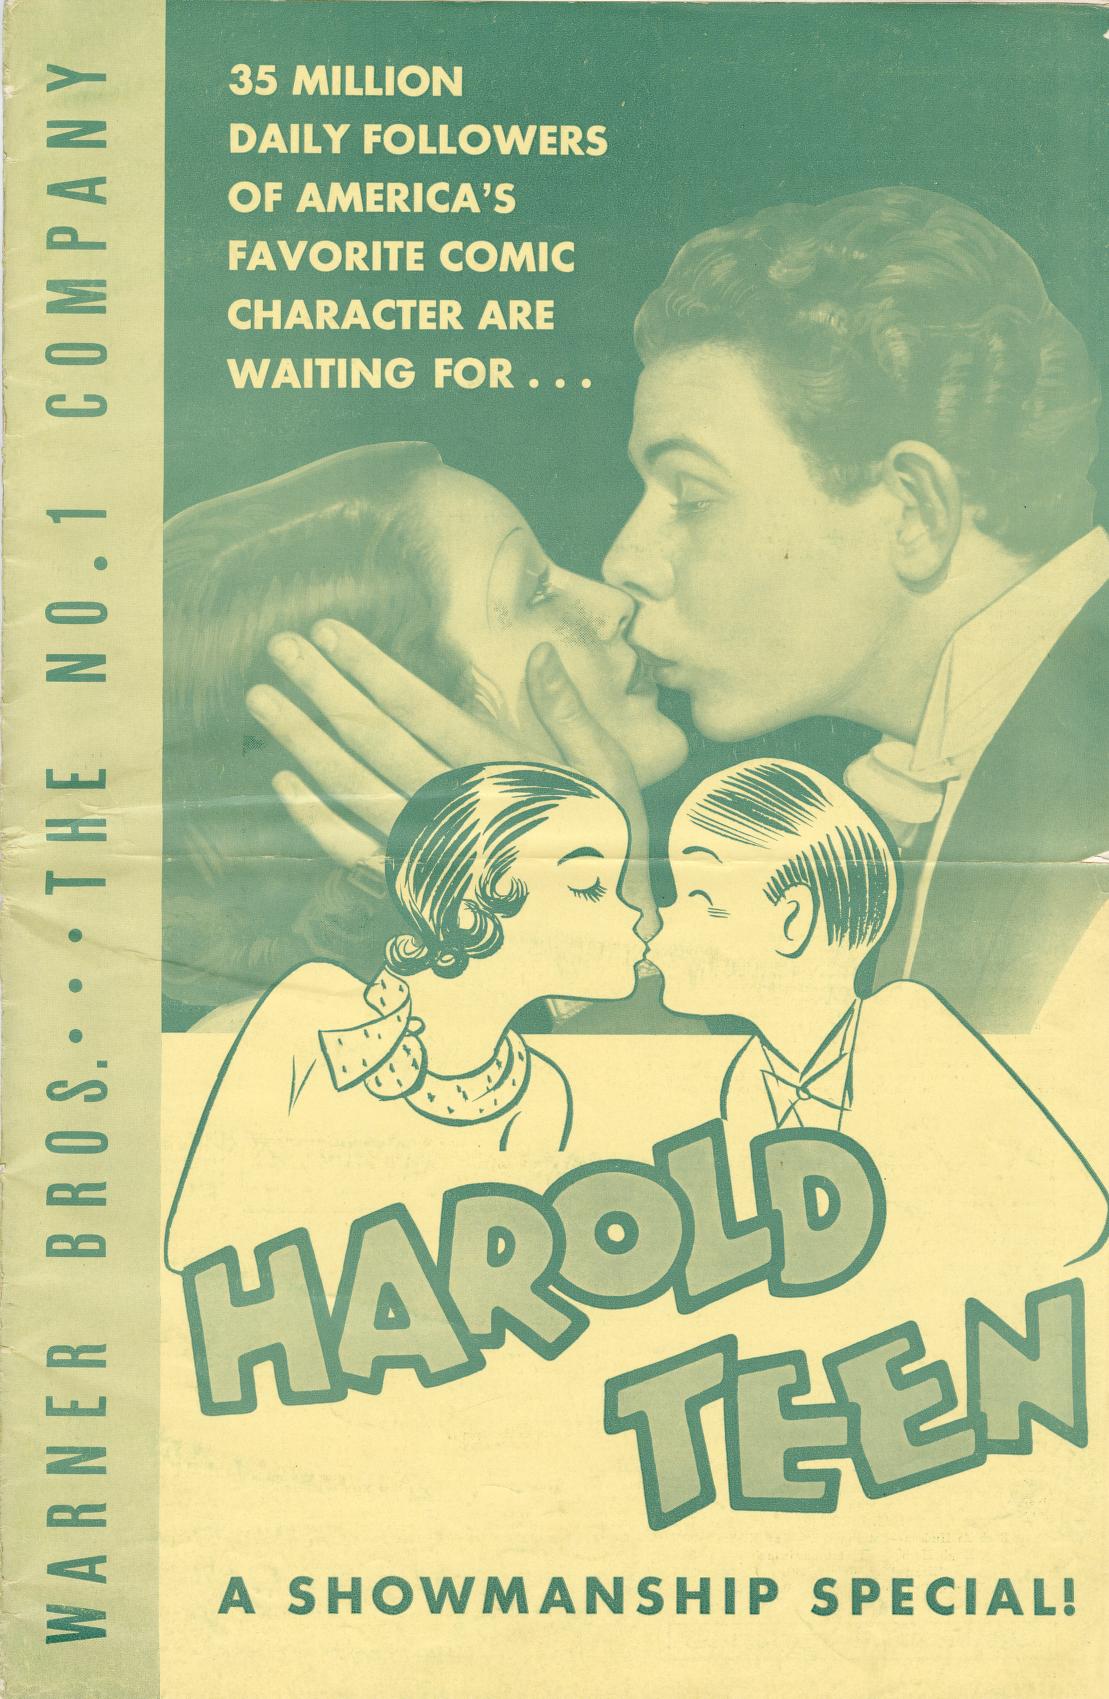 Harold Teen (Warner Bros.)